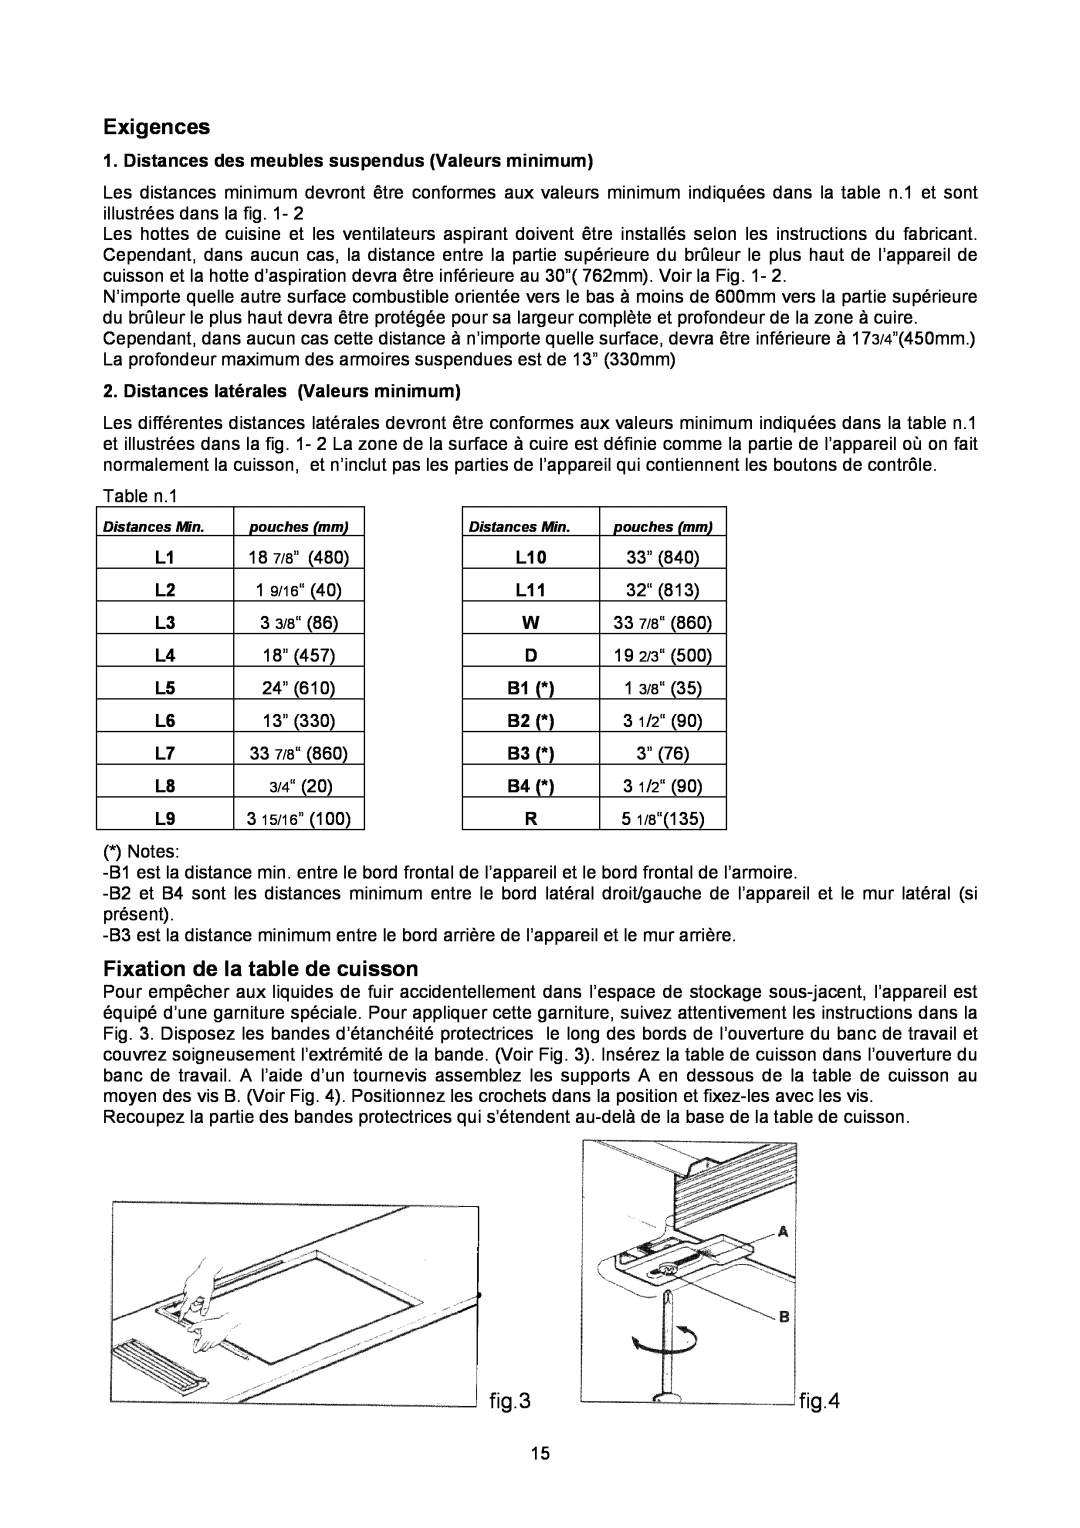 Bertazzoni P34 5 00 X dimensions Exigences, Fixation de la table de cuisson 